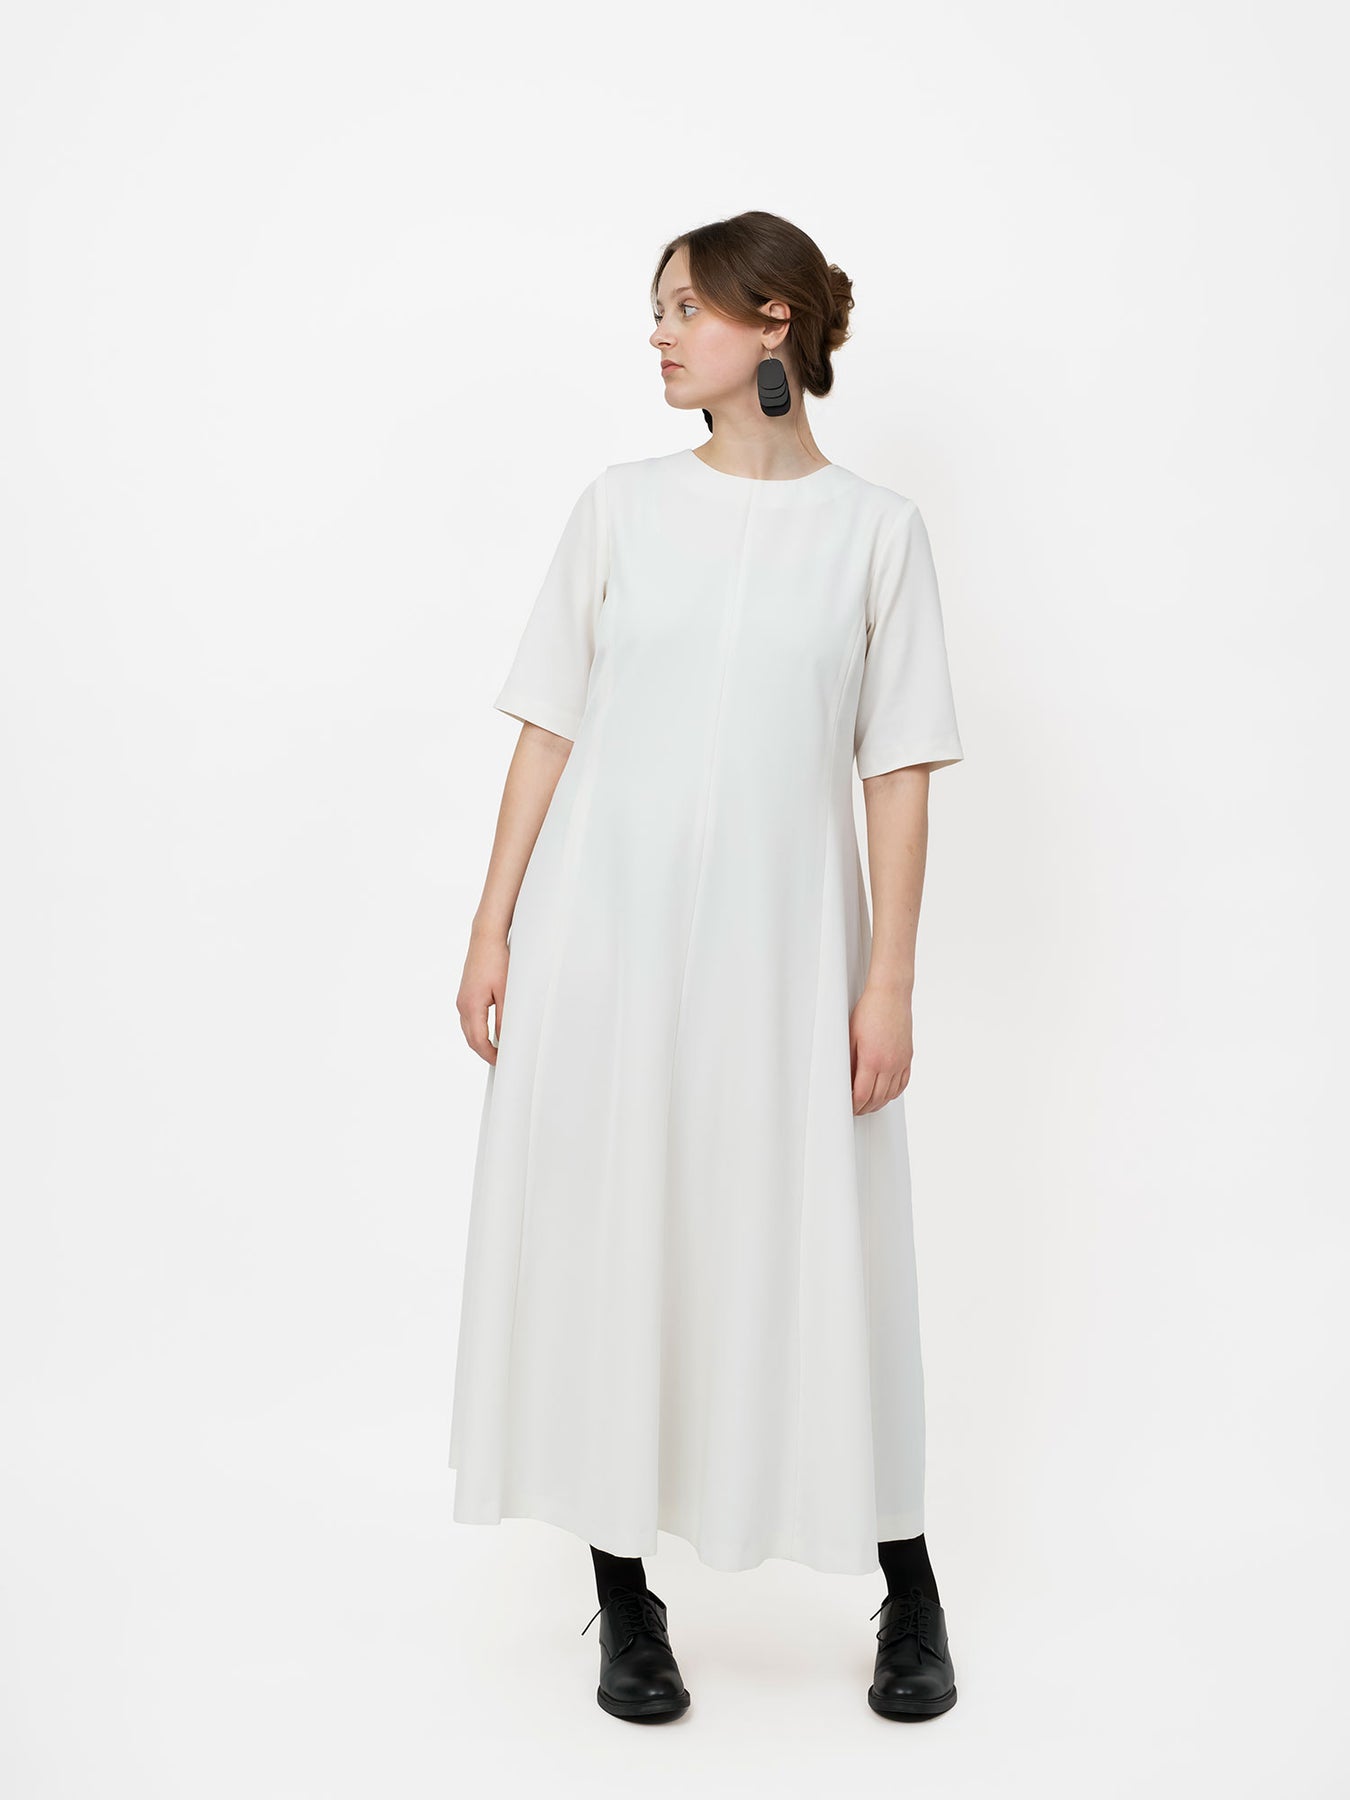 Liesl + Co., Saint-Germain Wrap Dress Sewing Pattern – Lakes Makerie